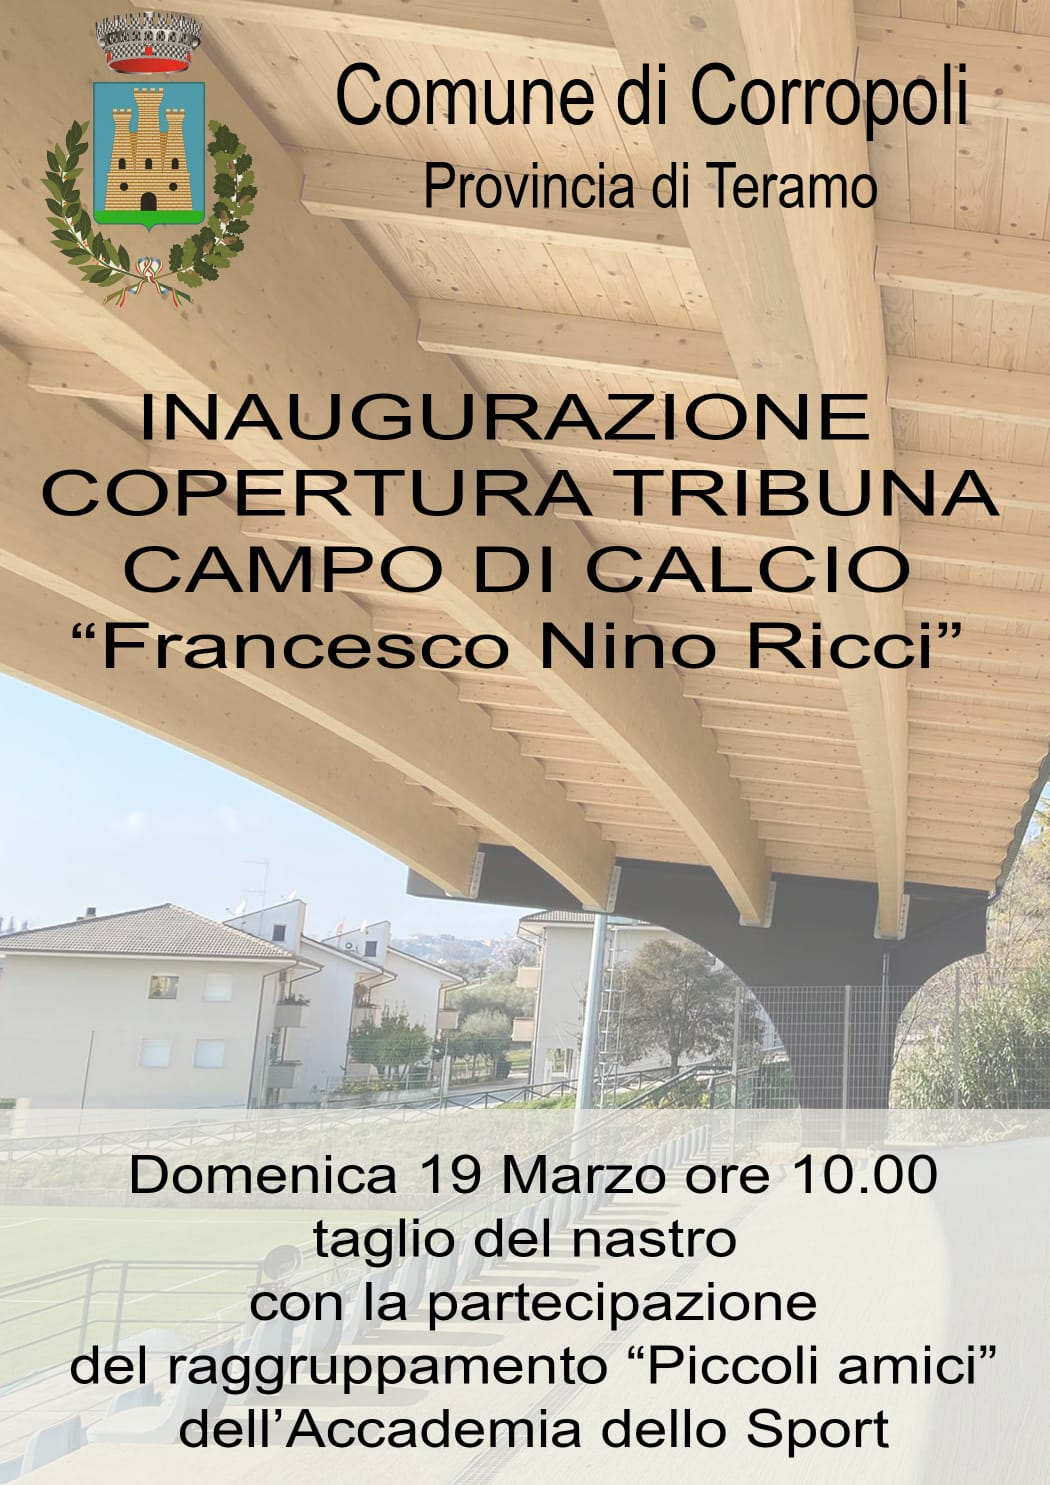 INAUGURAZIONE COPERTURA TRIBUNA CAMPO DI CALCIO F.N.RICCI